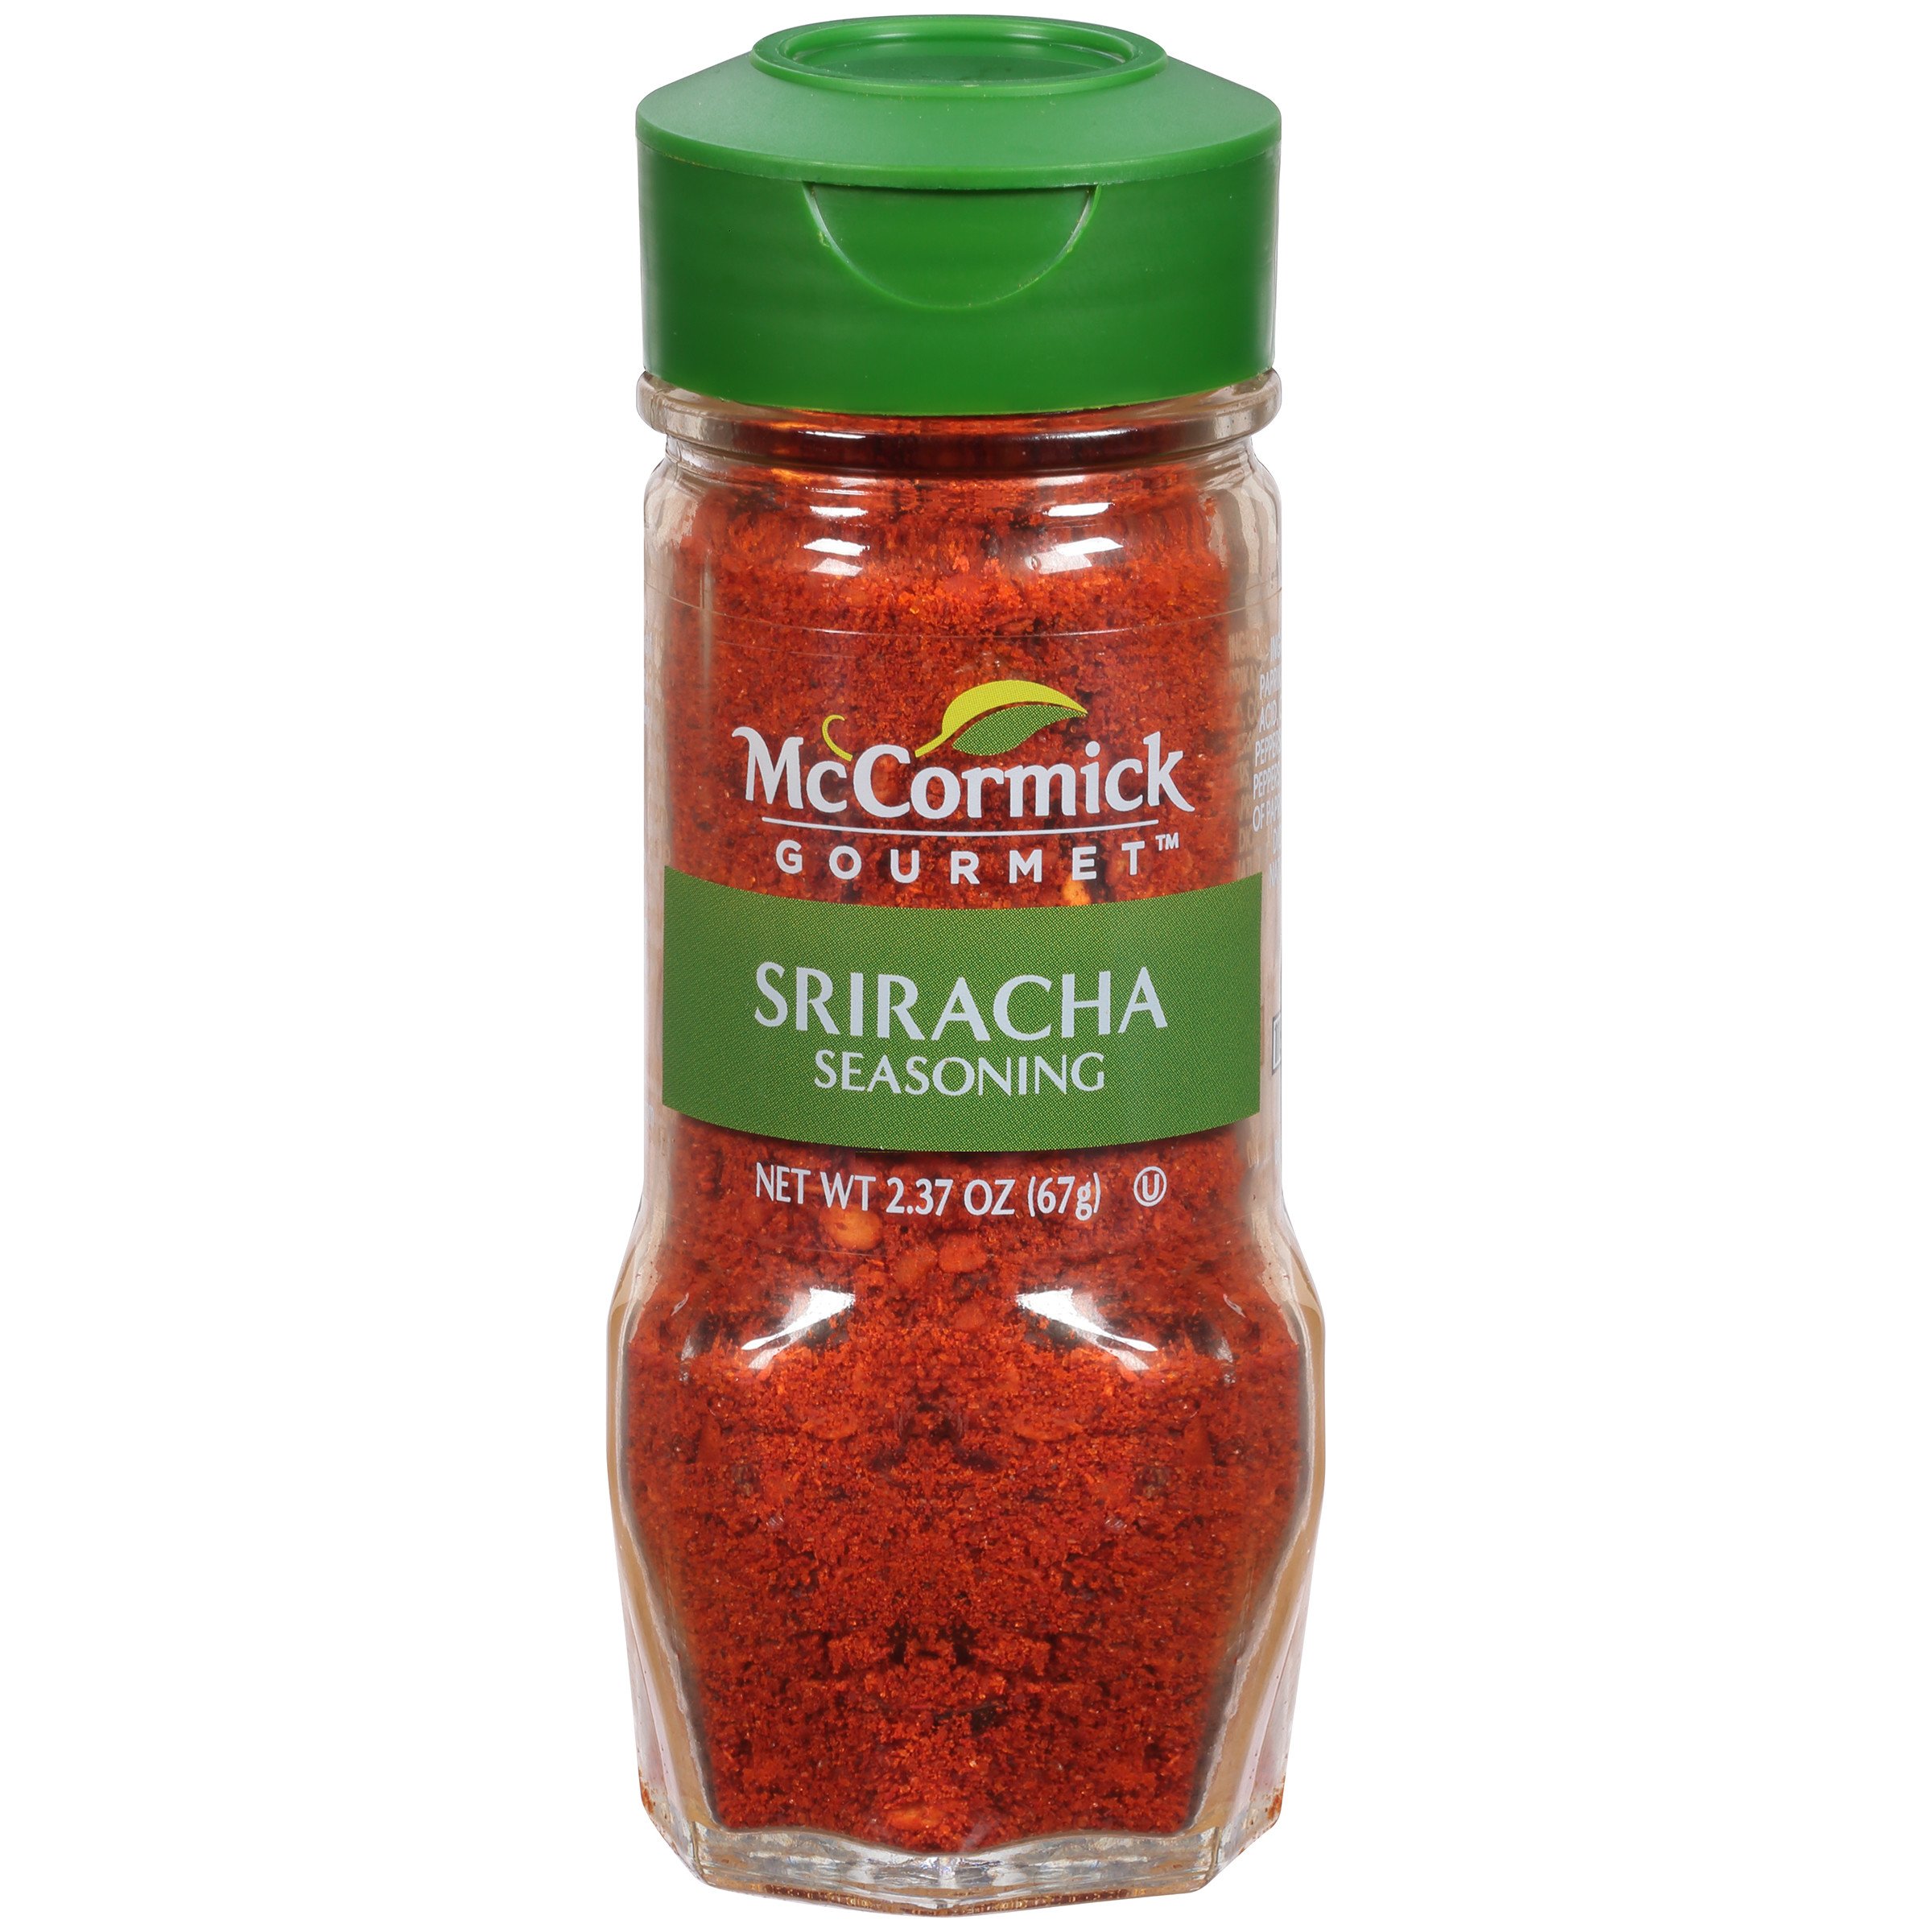 McCormick Gourmet Sriracha Seasoning, 2.37 oz